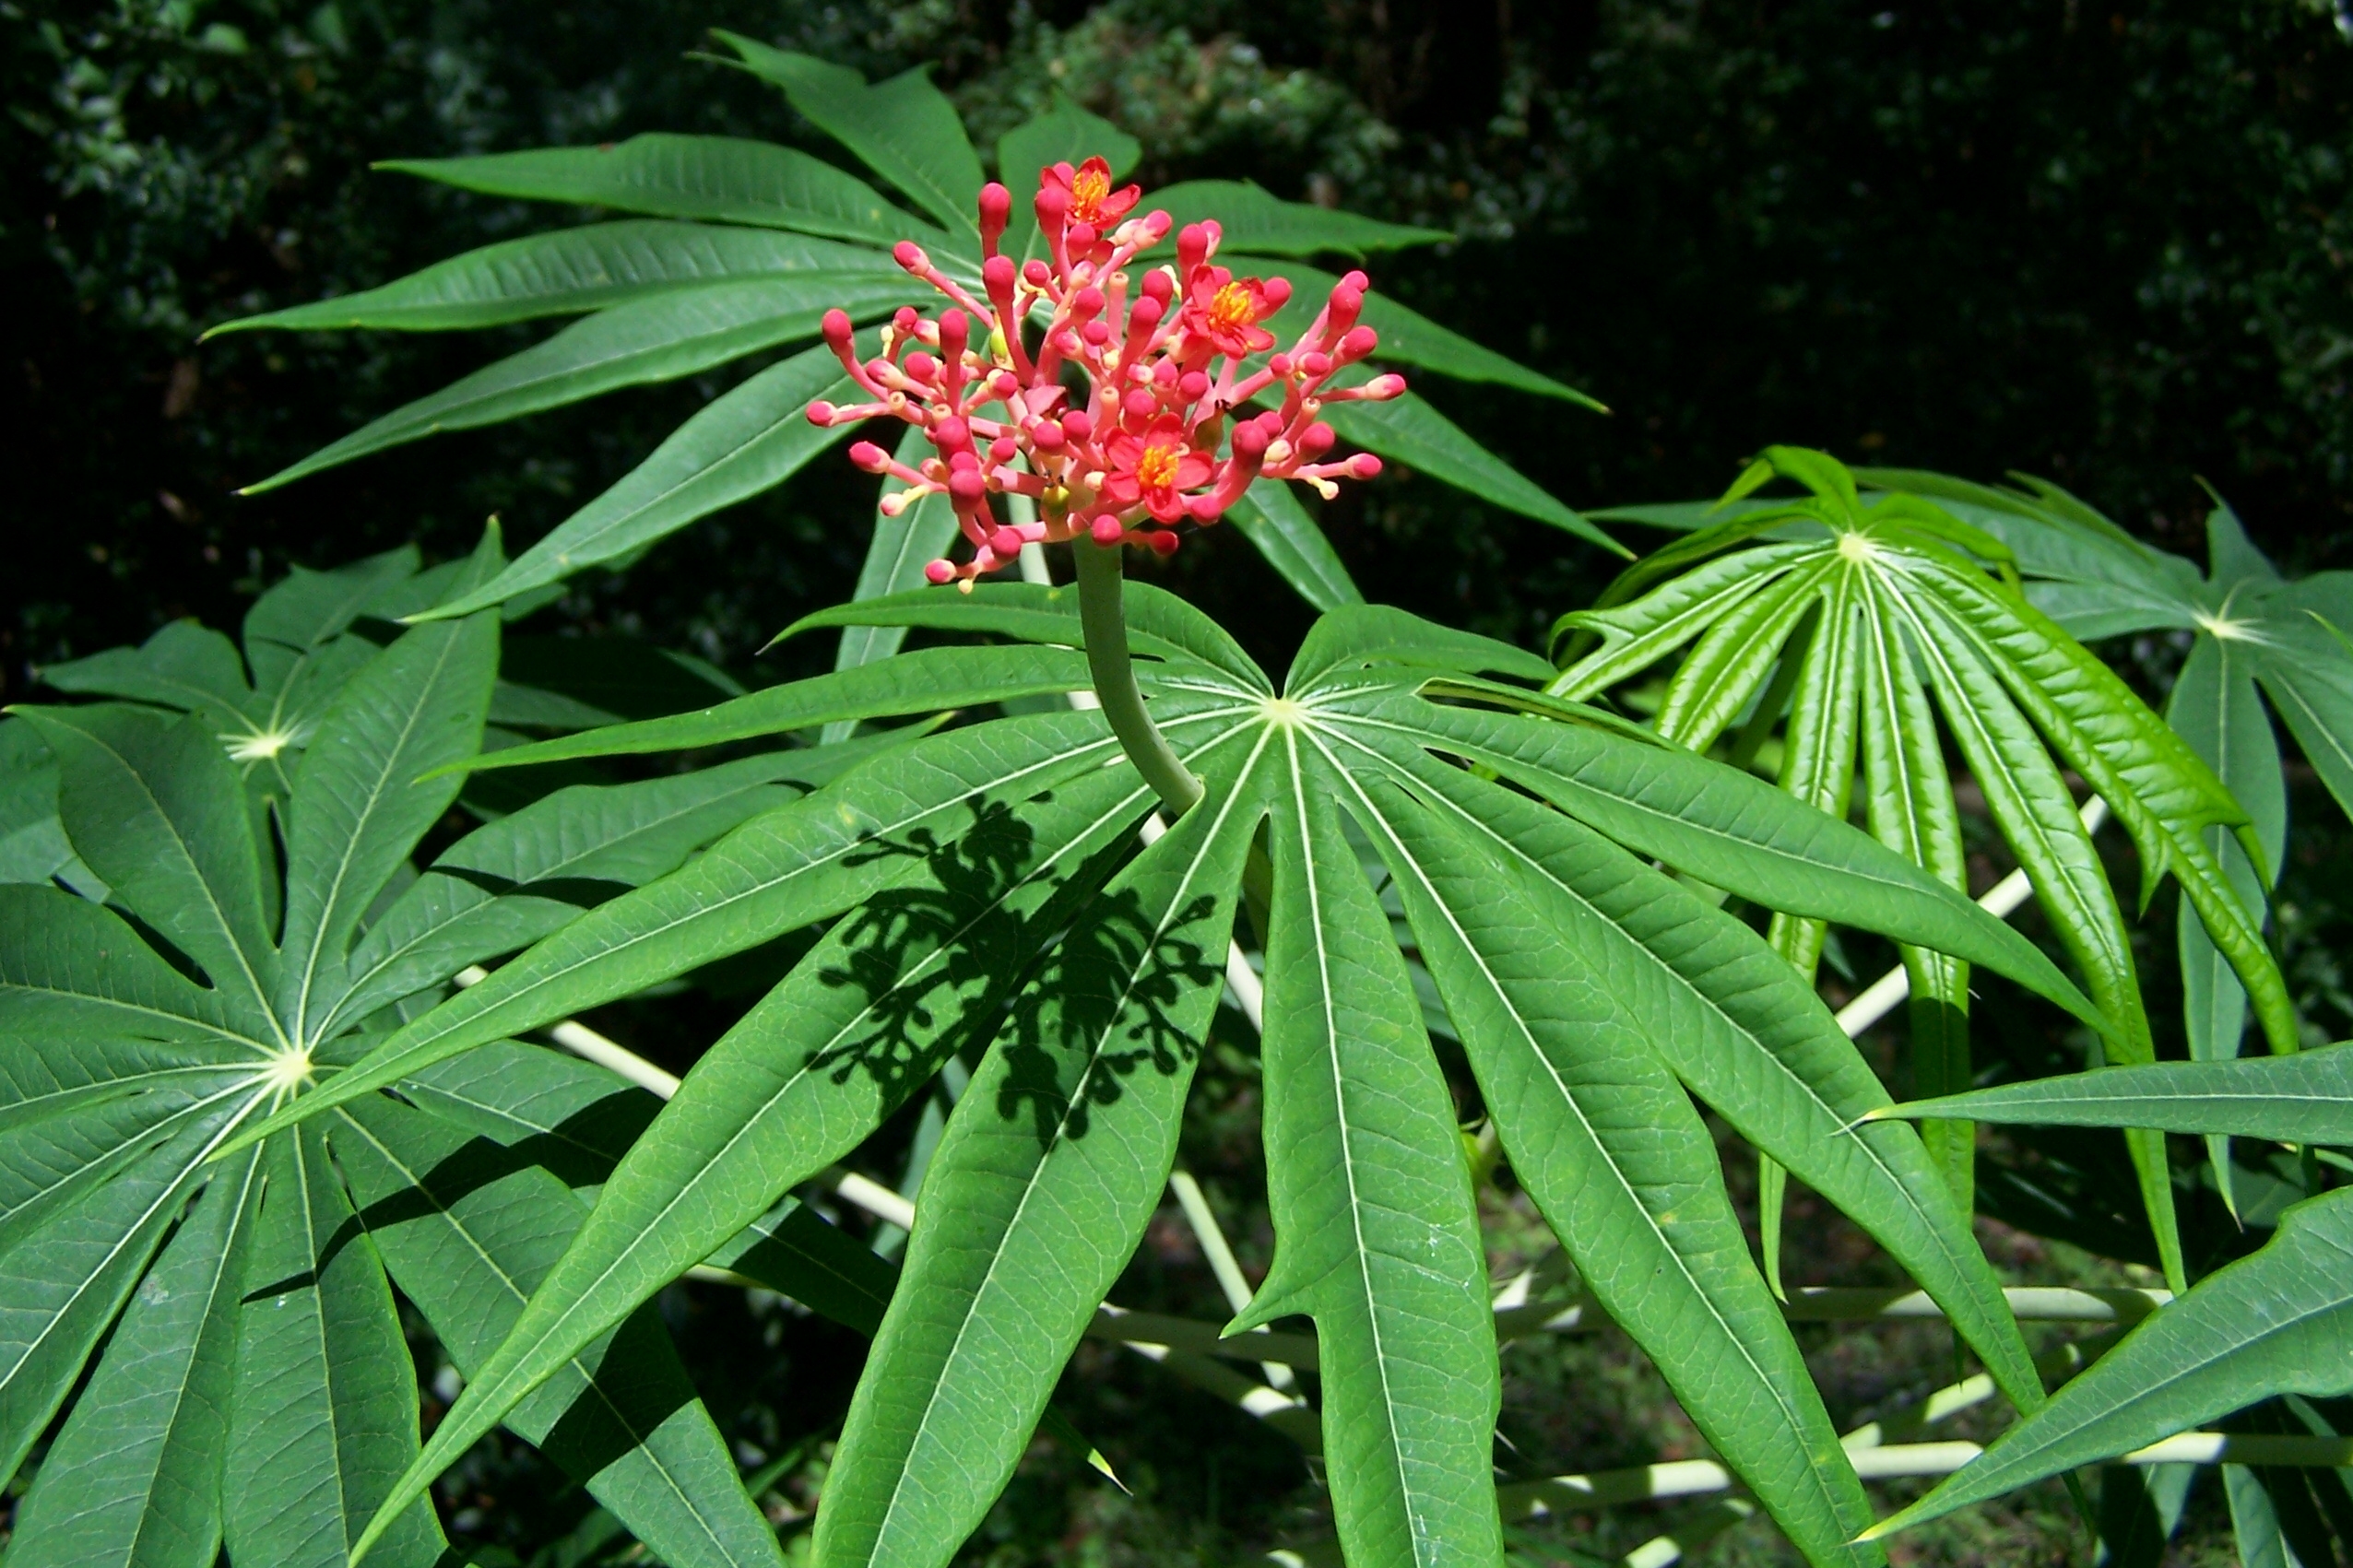 Coralbush,Physic Nute,Guatemala Rhubarb,Jatropha Seeds | eBay